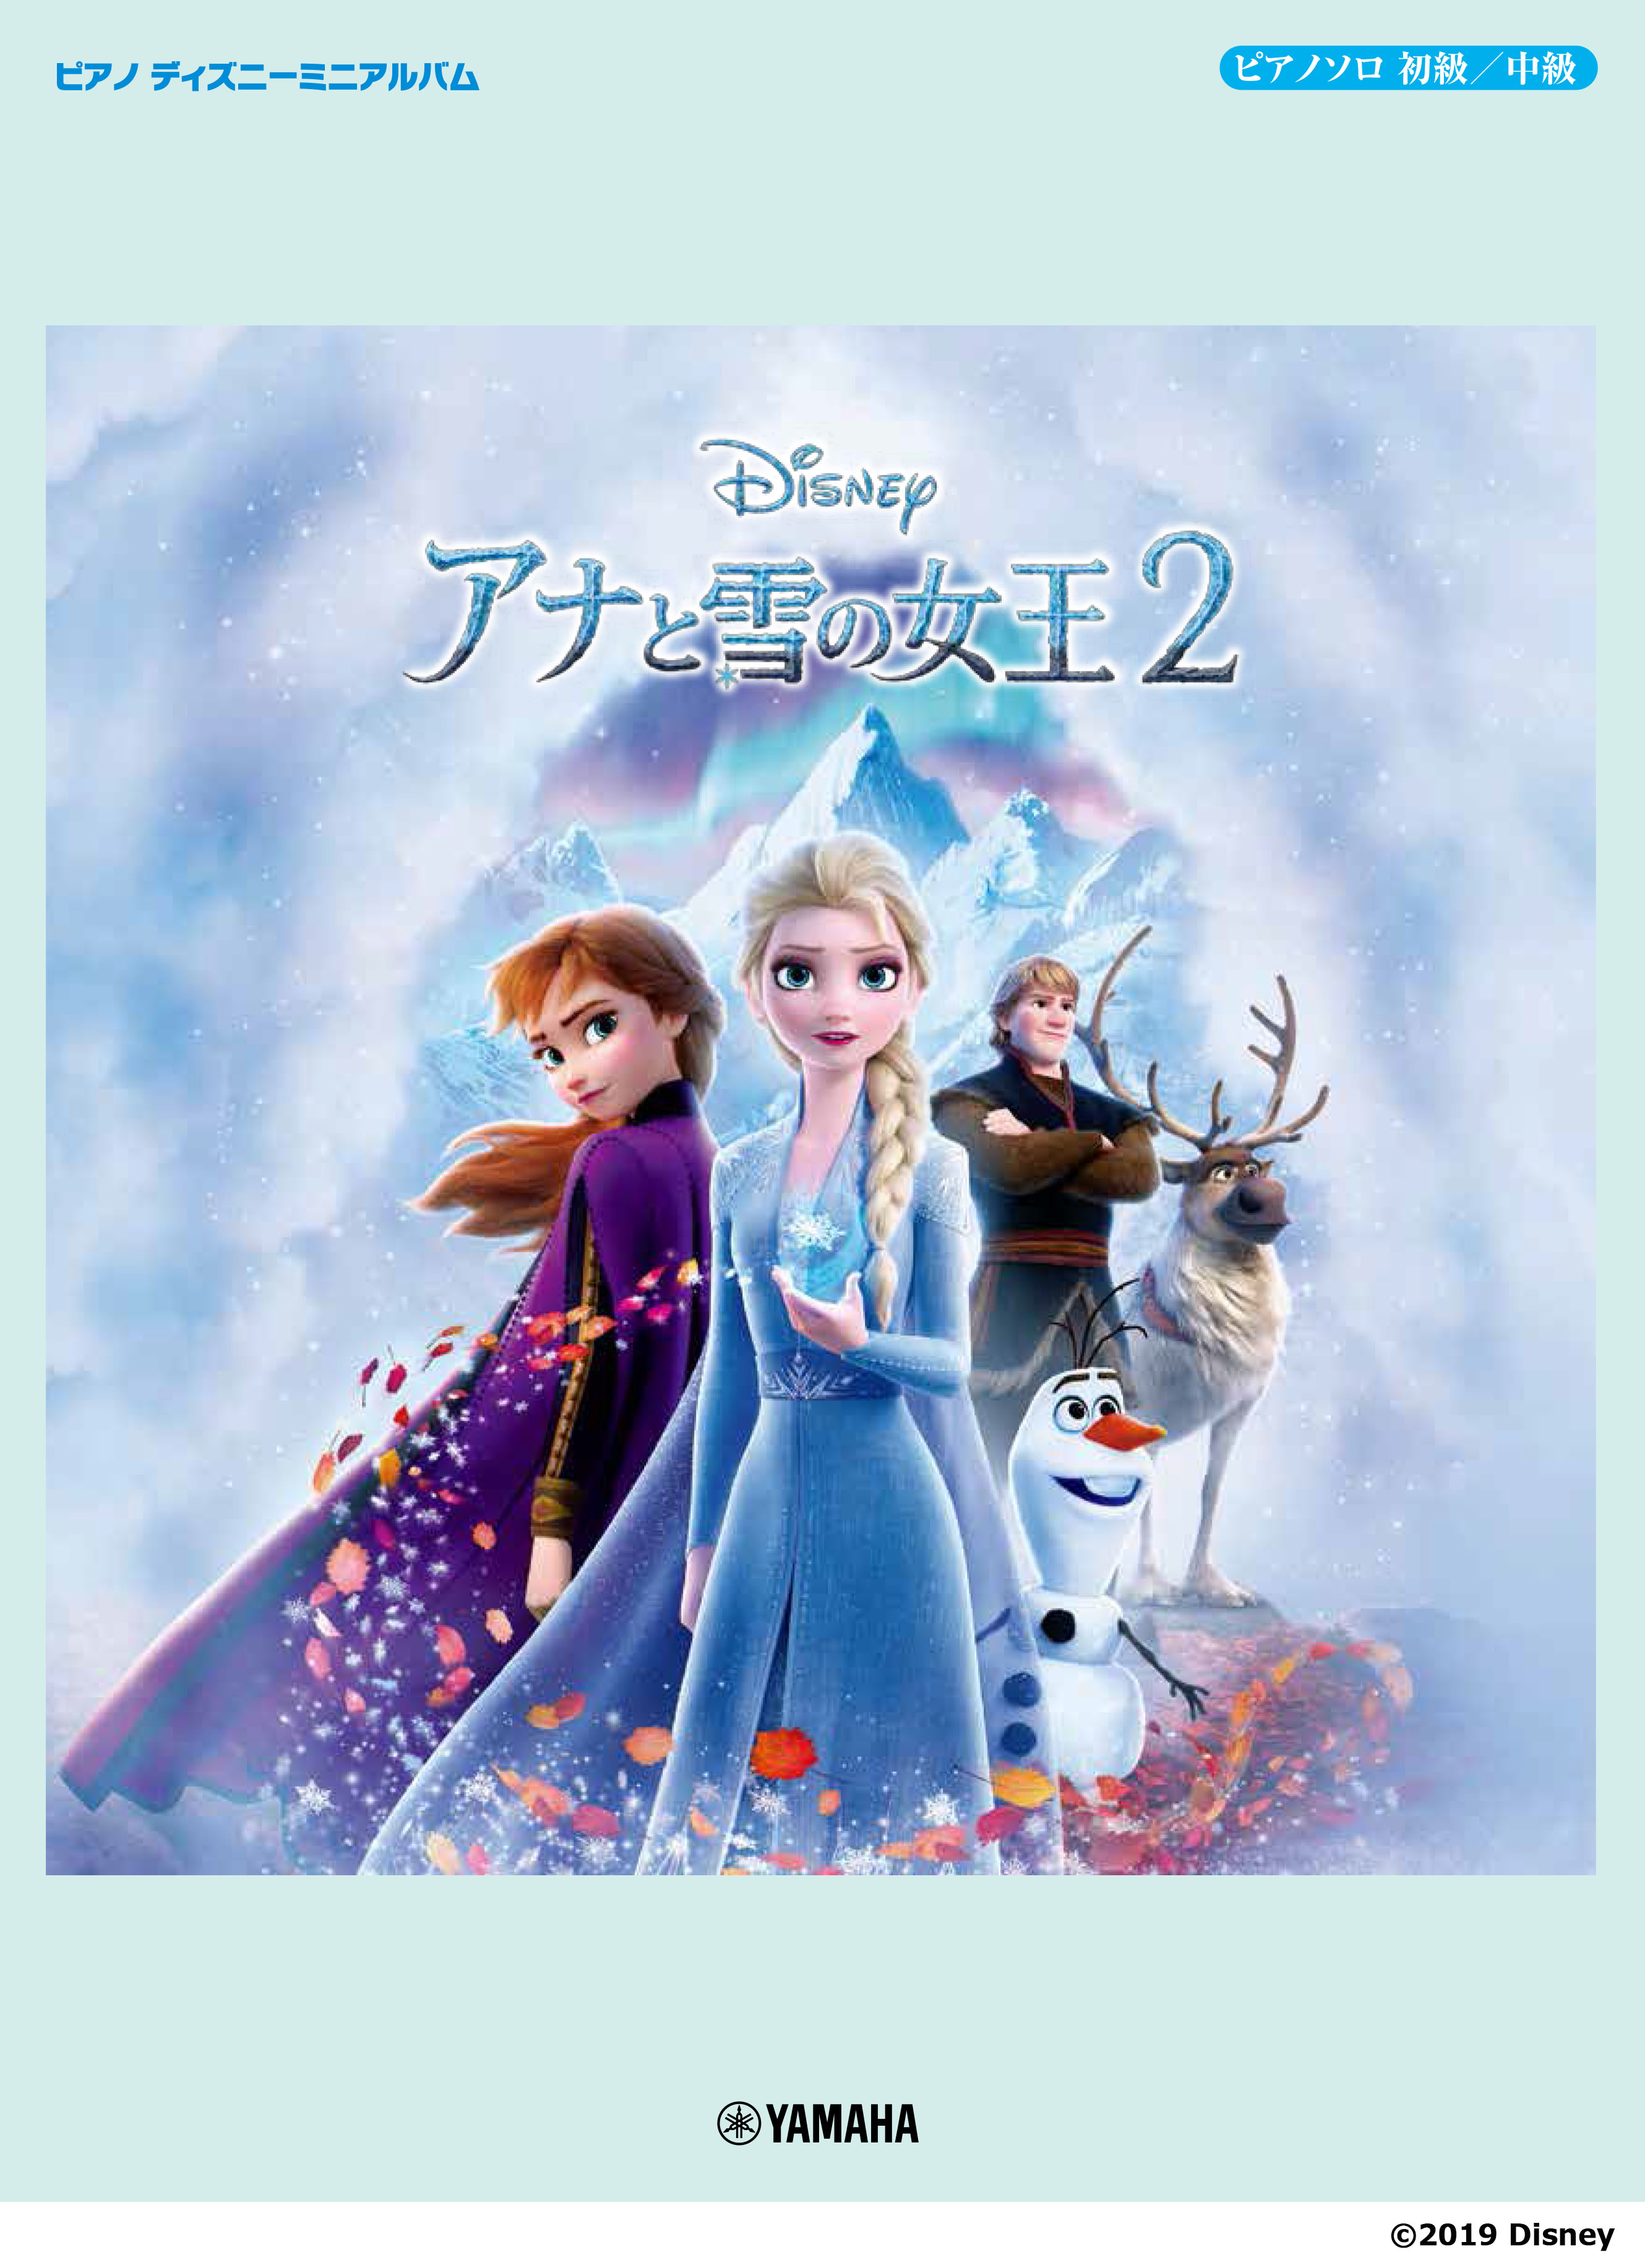 ピアノ ディズニーミニアルバム エレクトーン Stagea ディズニー 5級 Vol 9 アナと雪の女王2 12月27日発売 ヤマハミュージックエンタテインメントホールディングスのプレスリリース